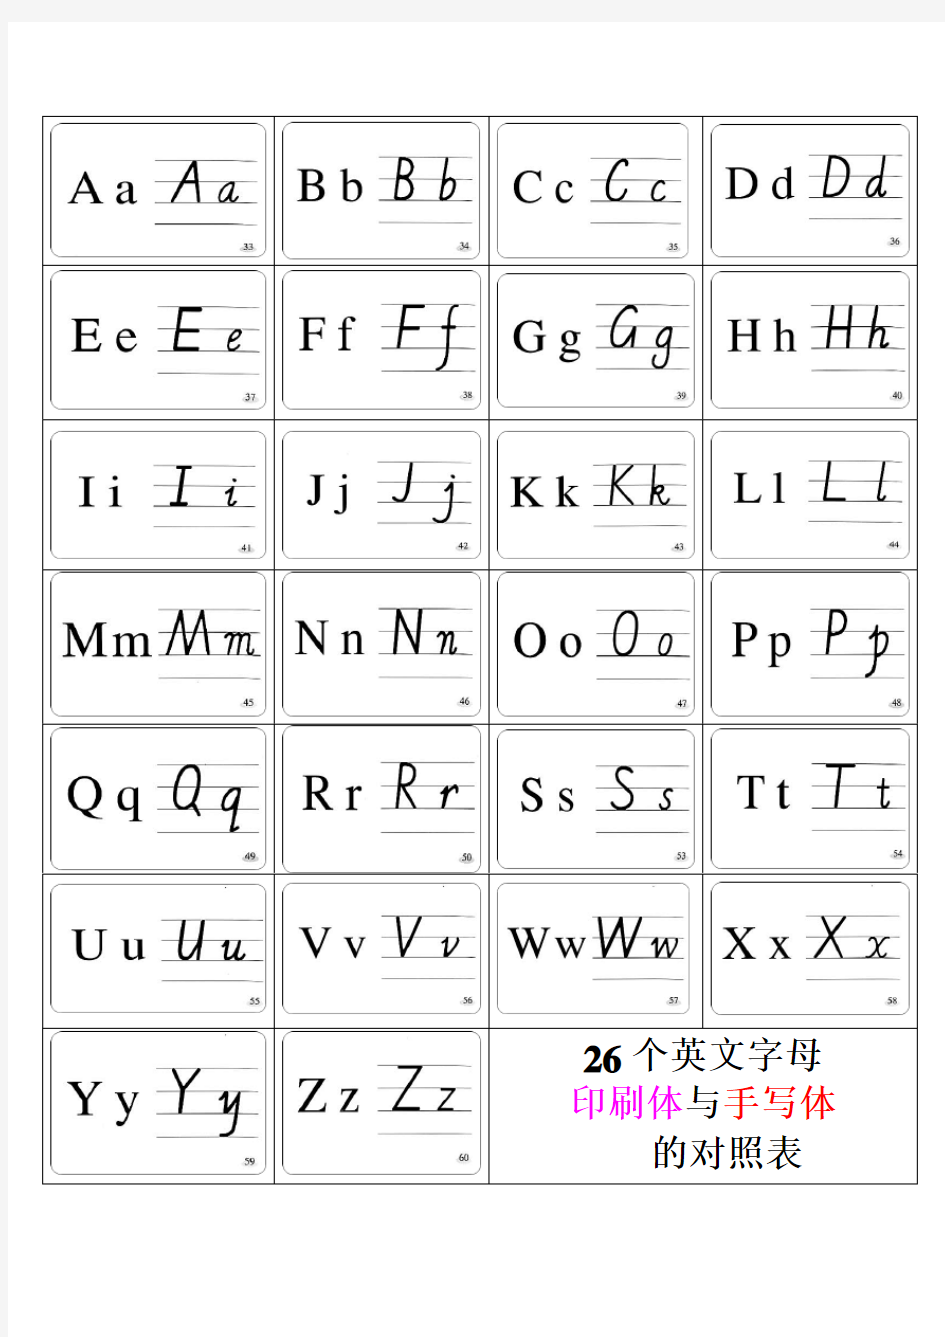 26个英文字母印刷体与手写体对照表以及笔顺对照表[1]